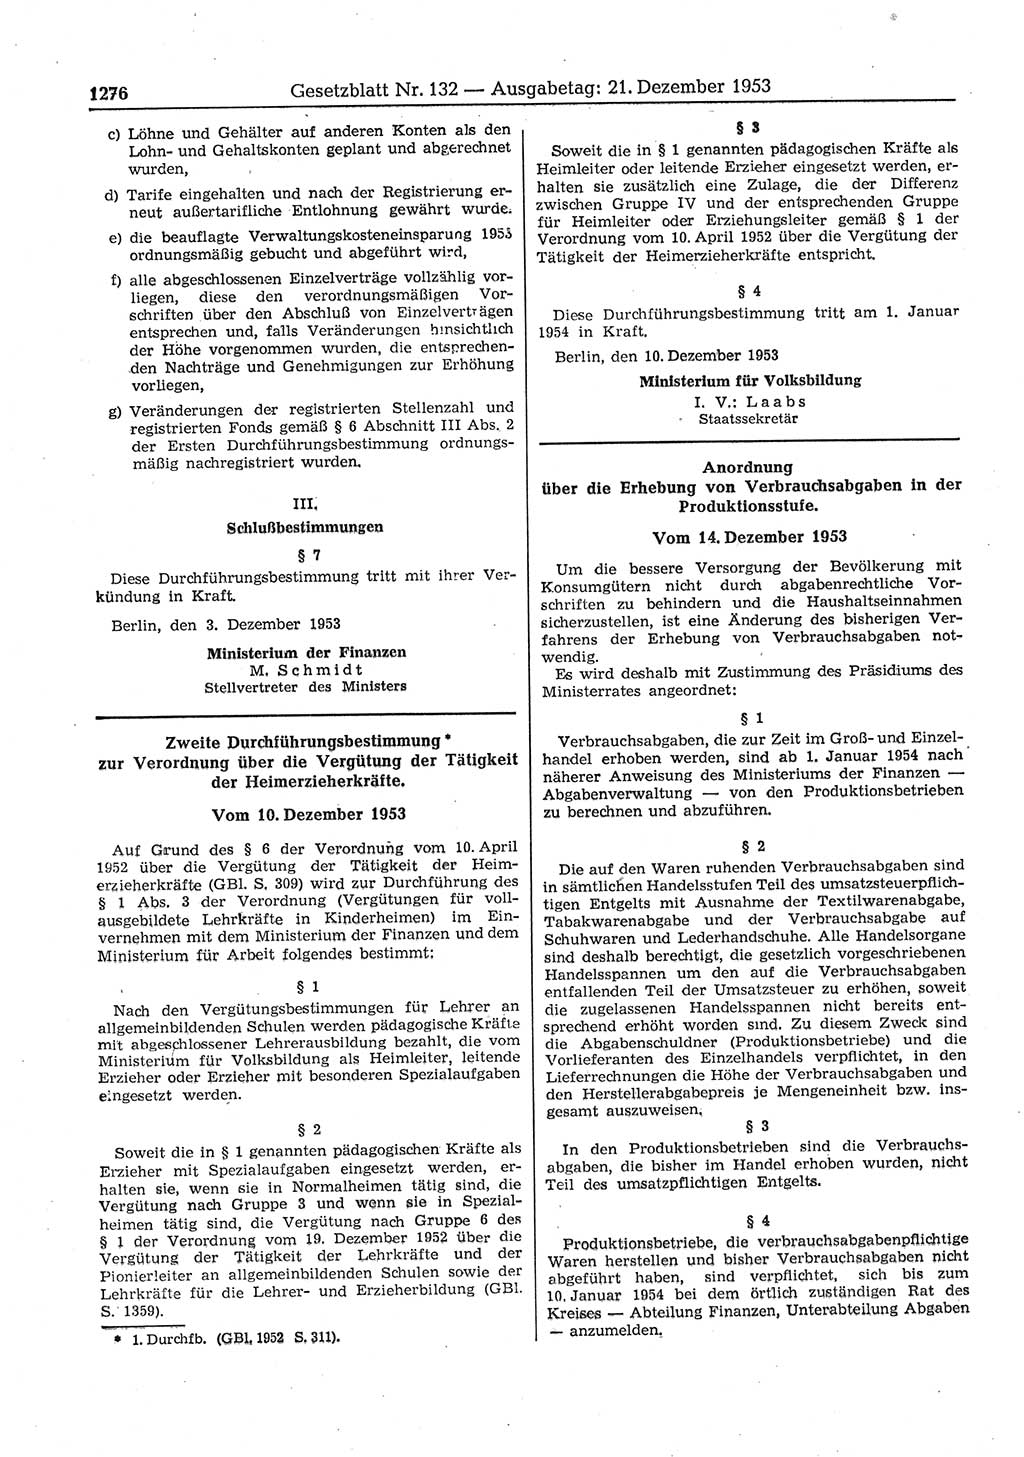 Gesetzblatt (GBl.) der Deutschen Demokratischen Republik (DDR) 1953, Seite 1276 (GBl. DDR 1953, S. 1276)